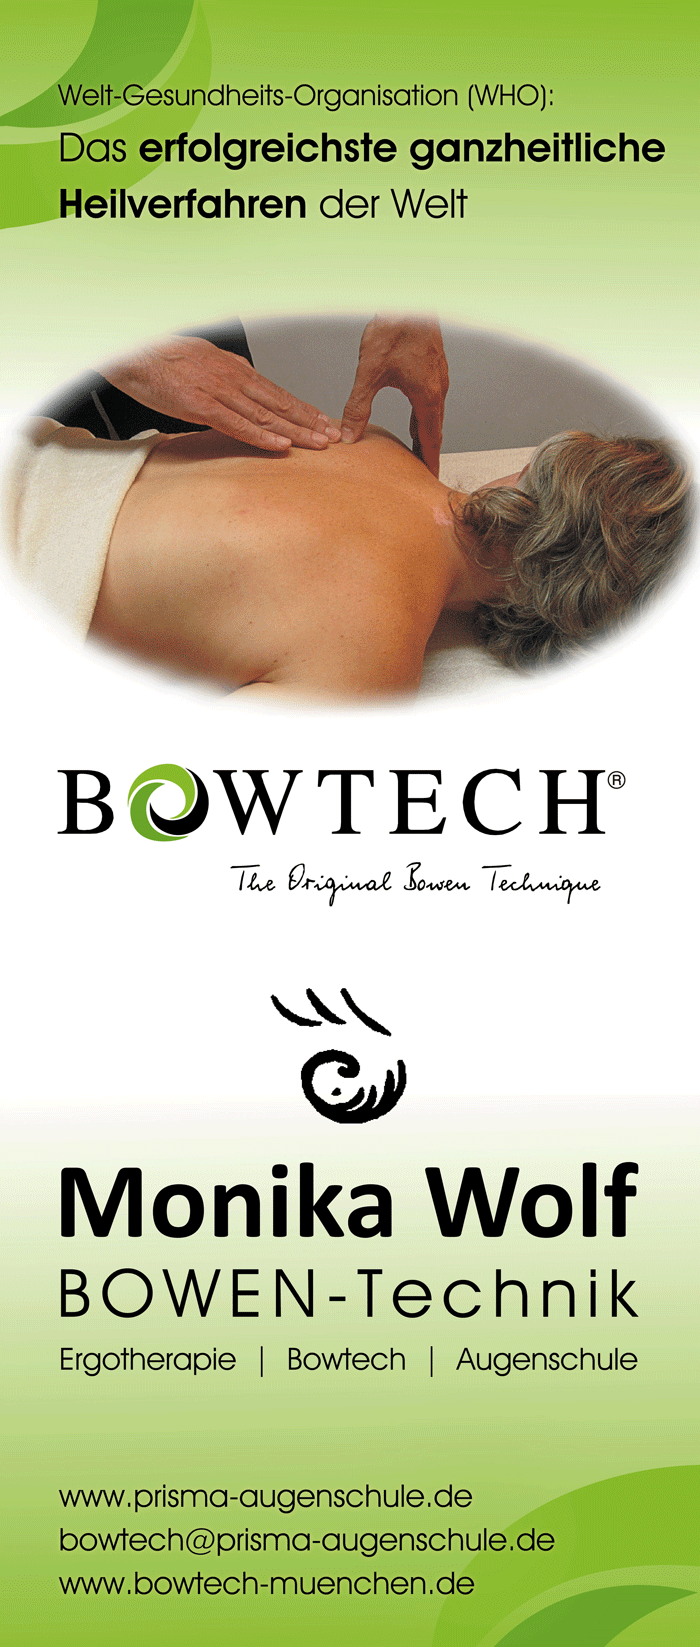 Bowtech das erfolgreichste ganzheitliche Heilverfahren der Welt